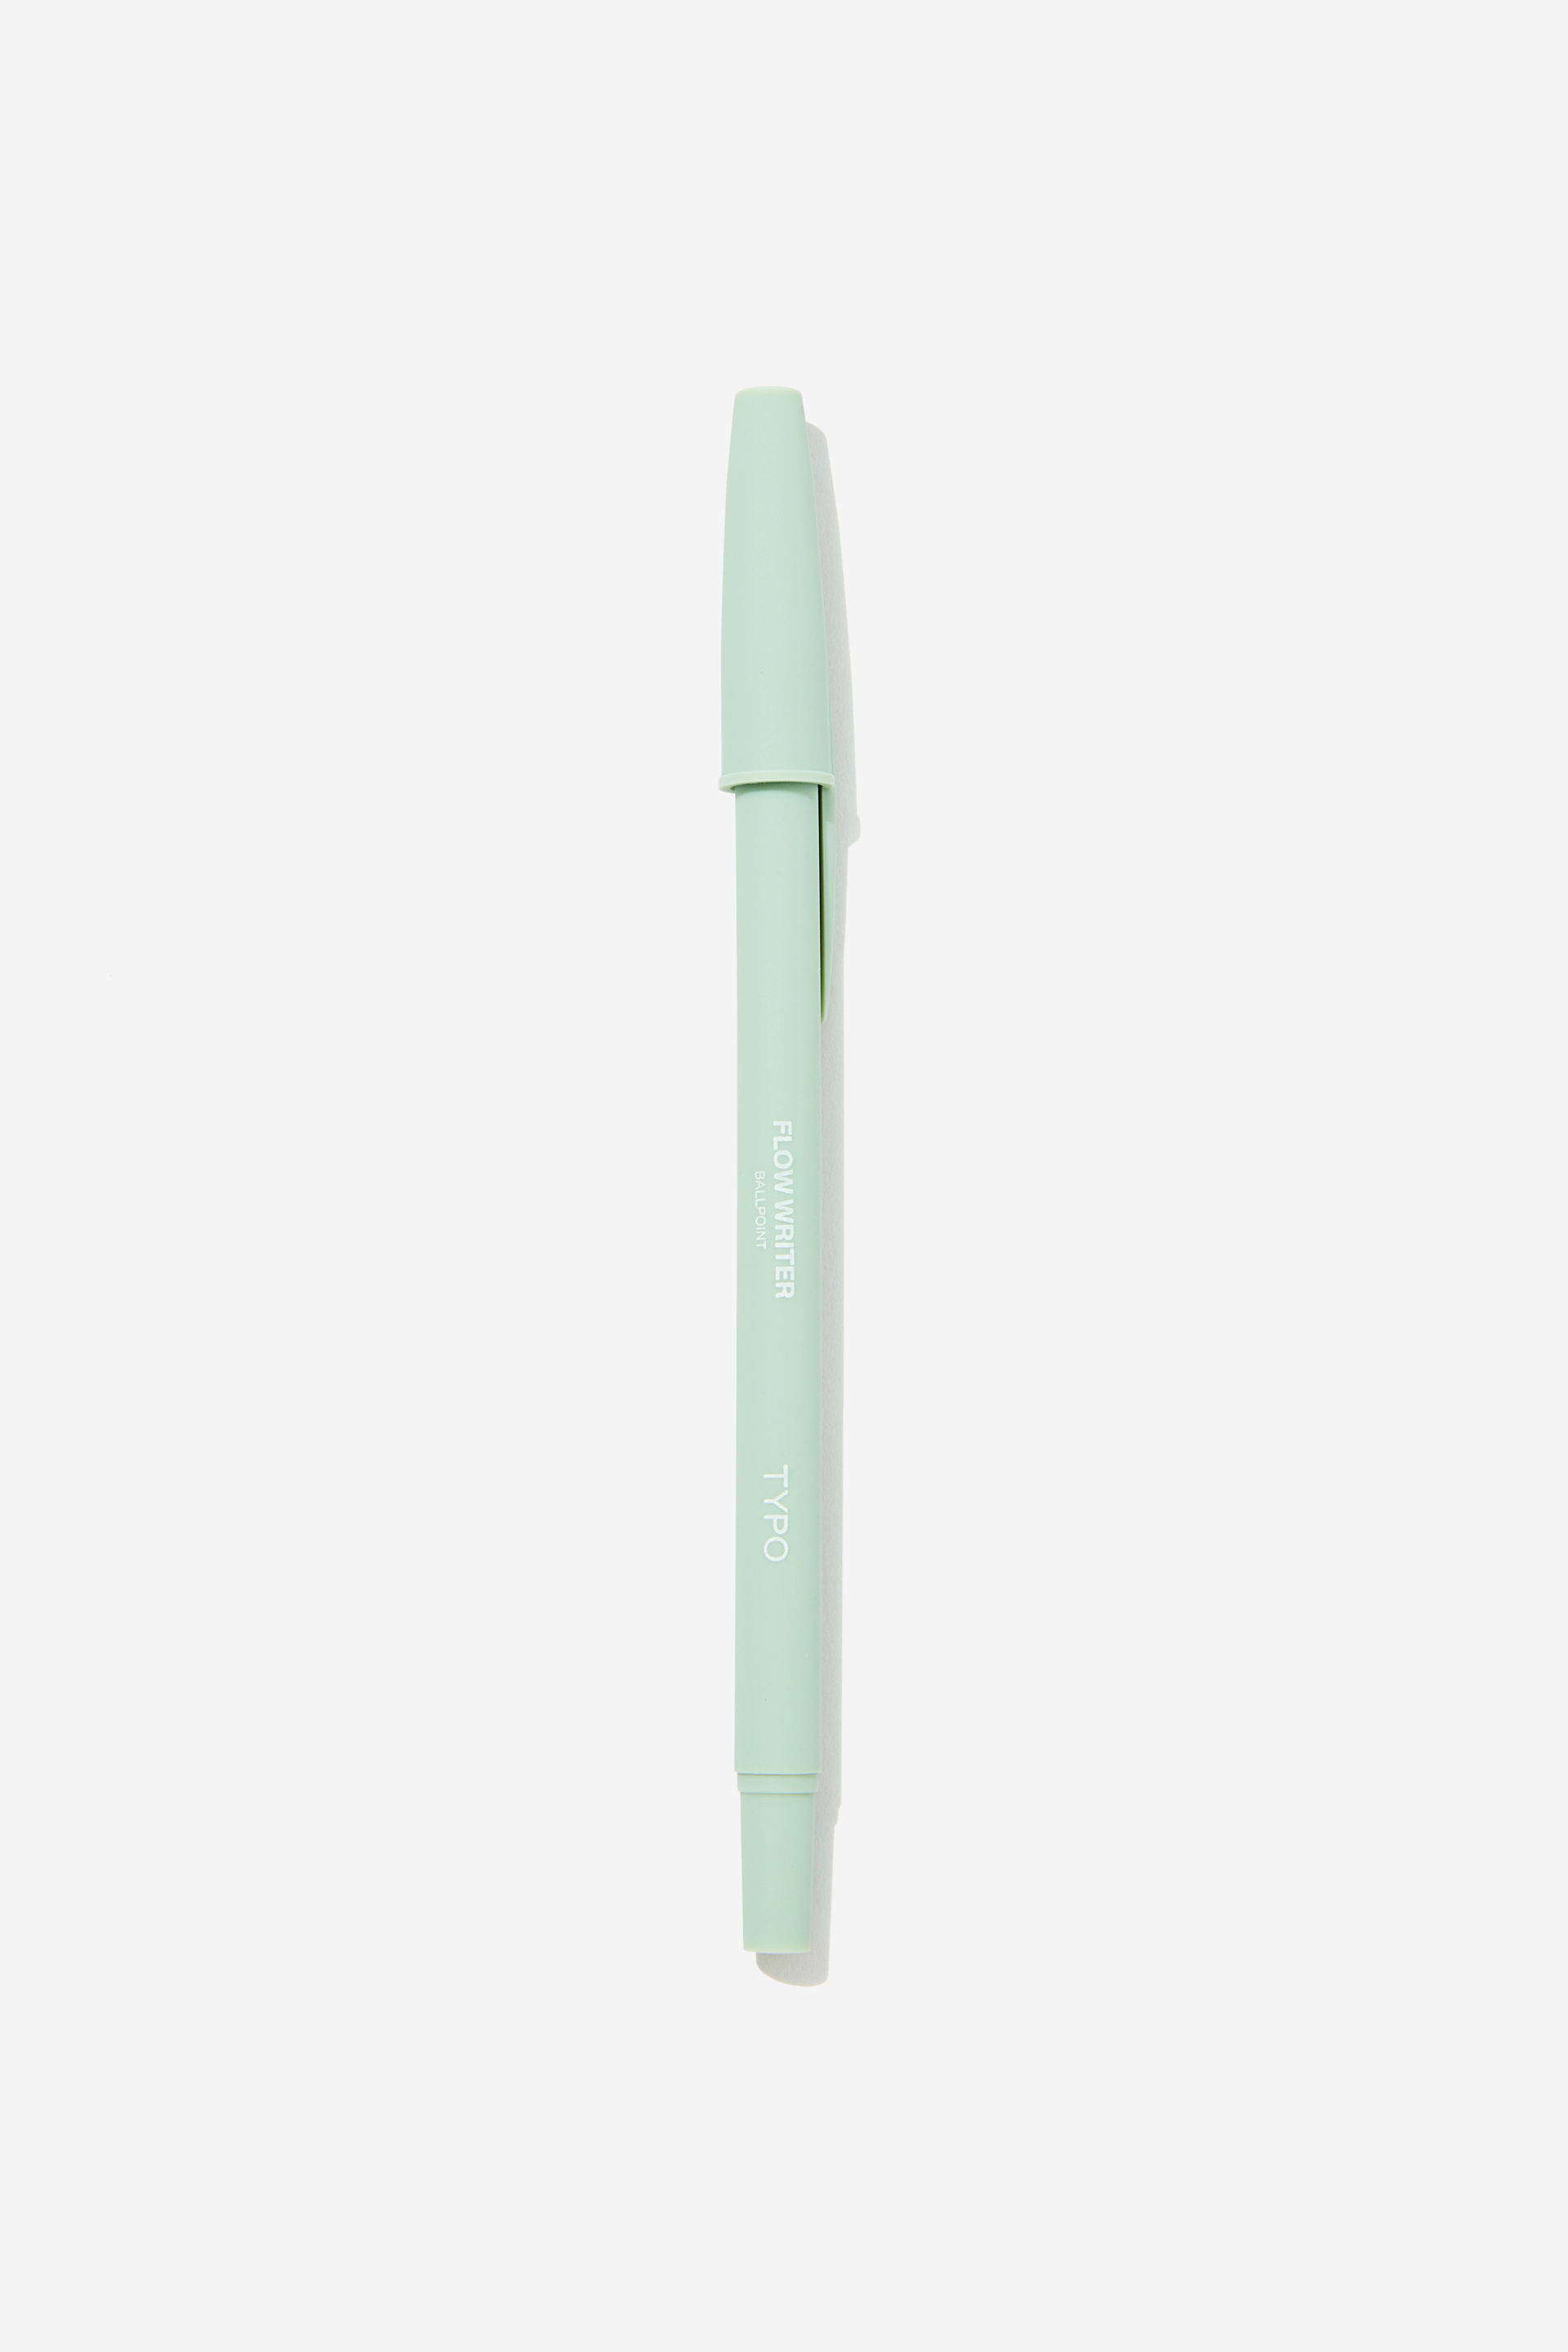 Typo - Flow Writer Ballpoint Pen - Smoke green